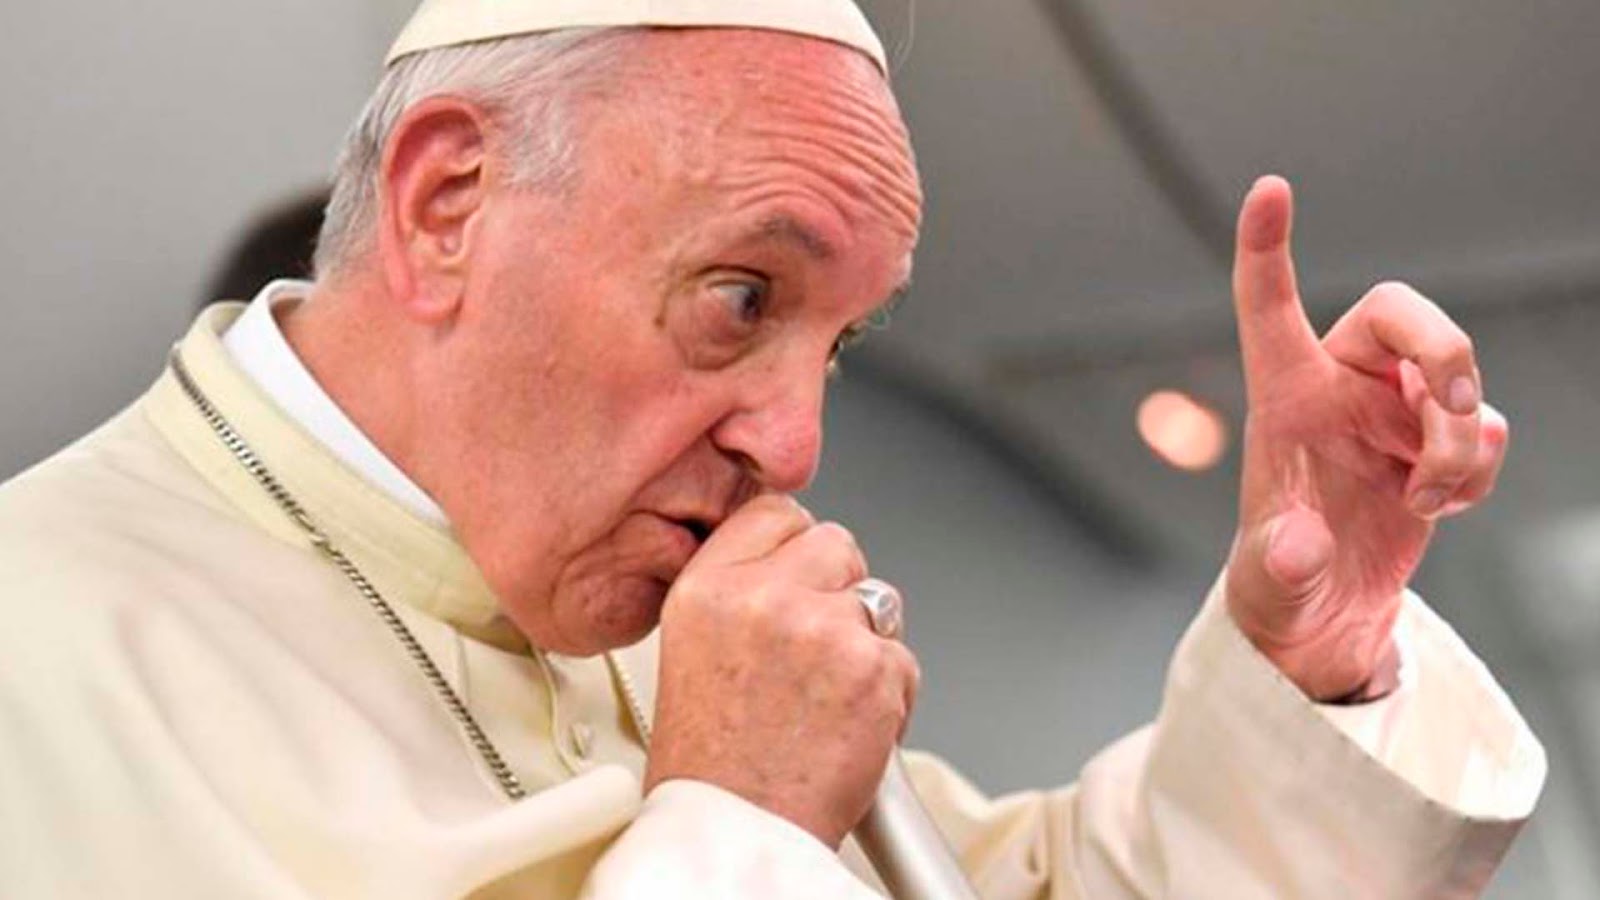 El infierno no existe: Papa Francisco 